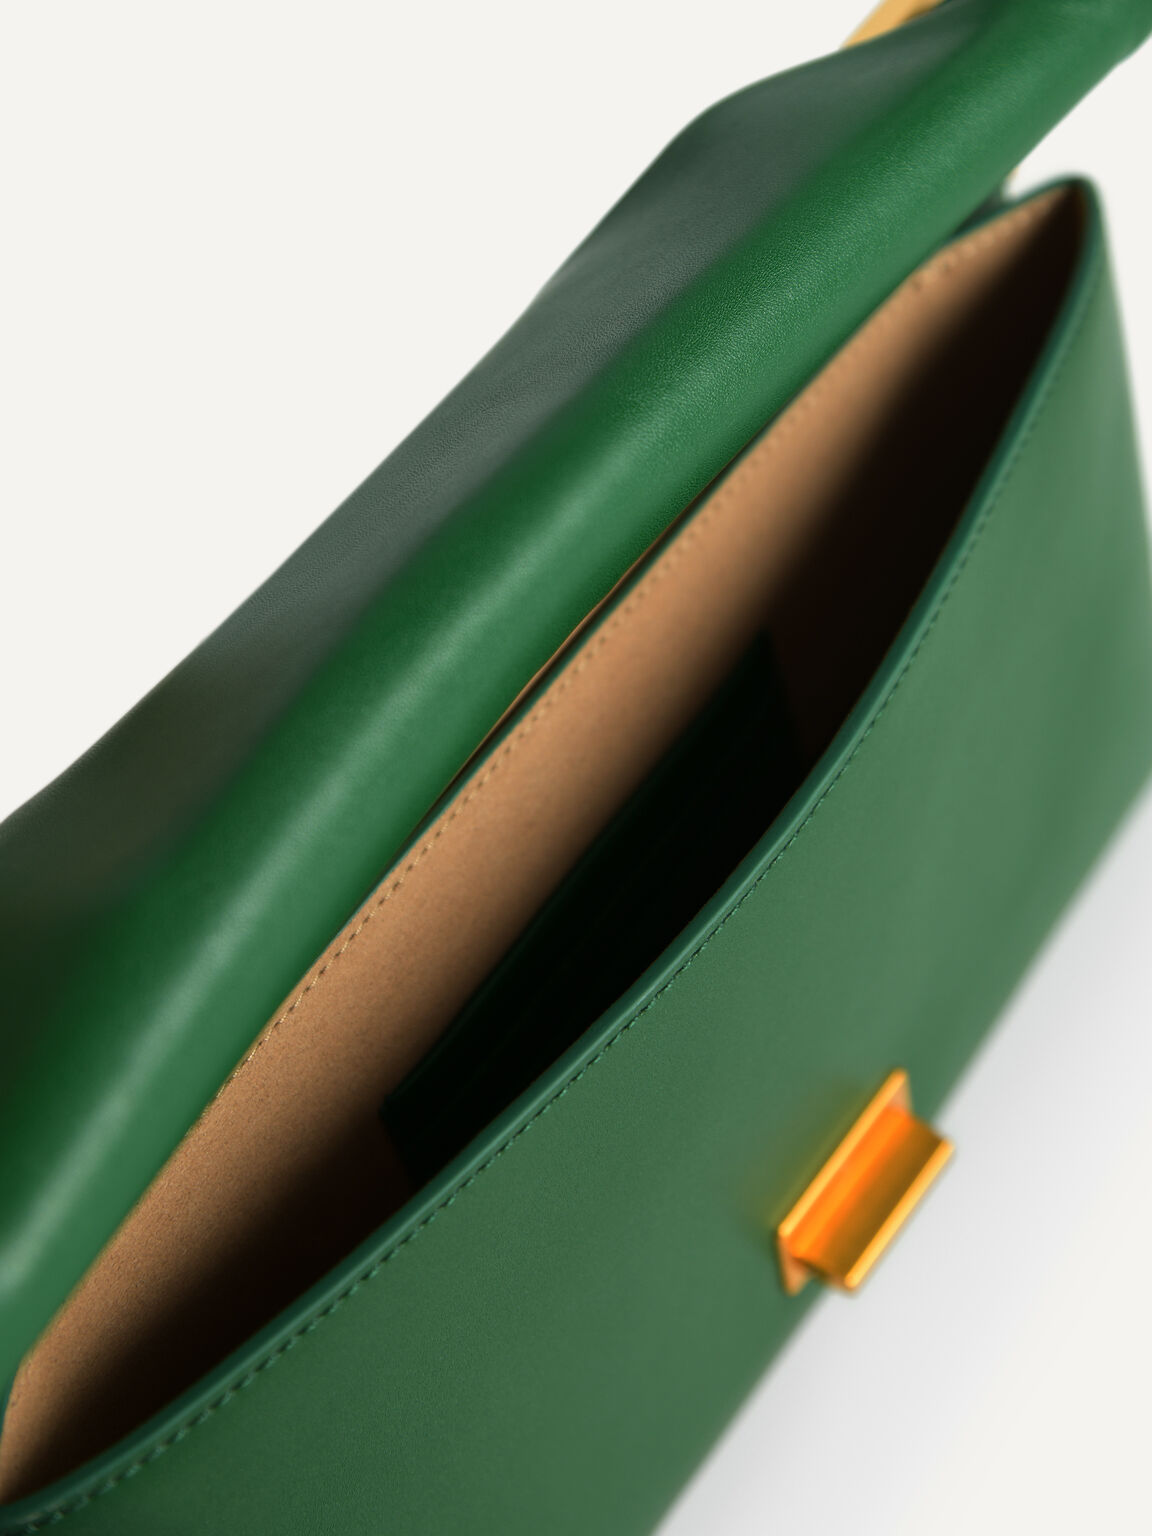 Envelope Leather Shoulder Bag, Green, hi-res